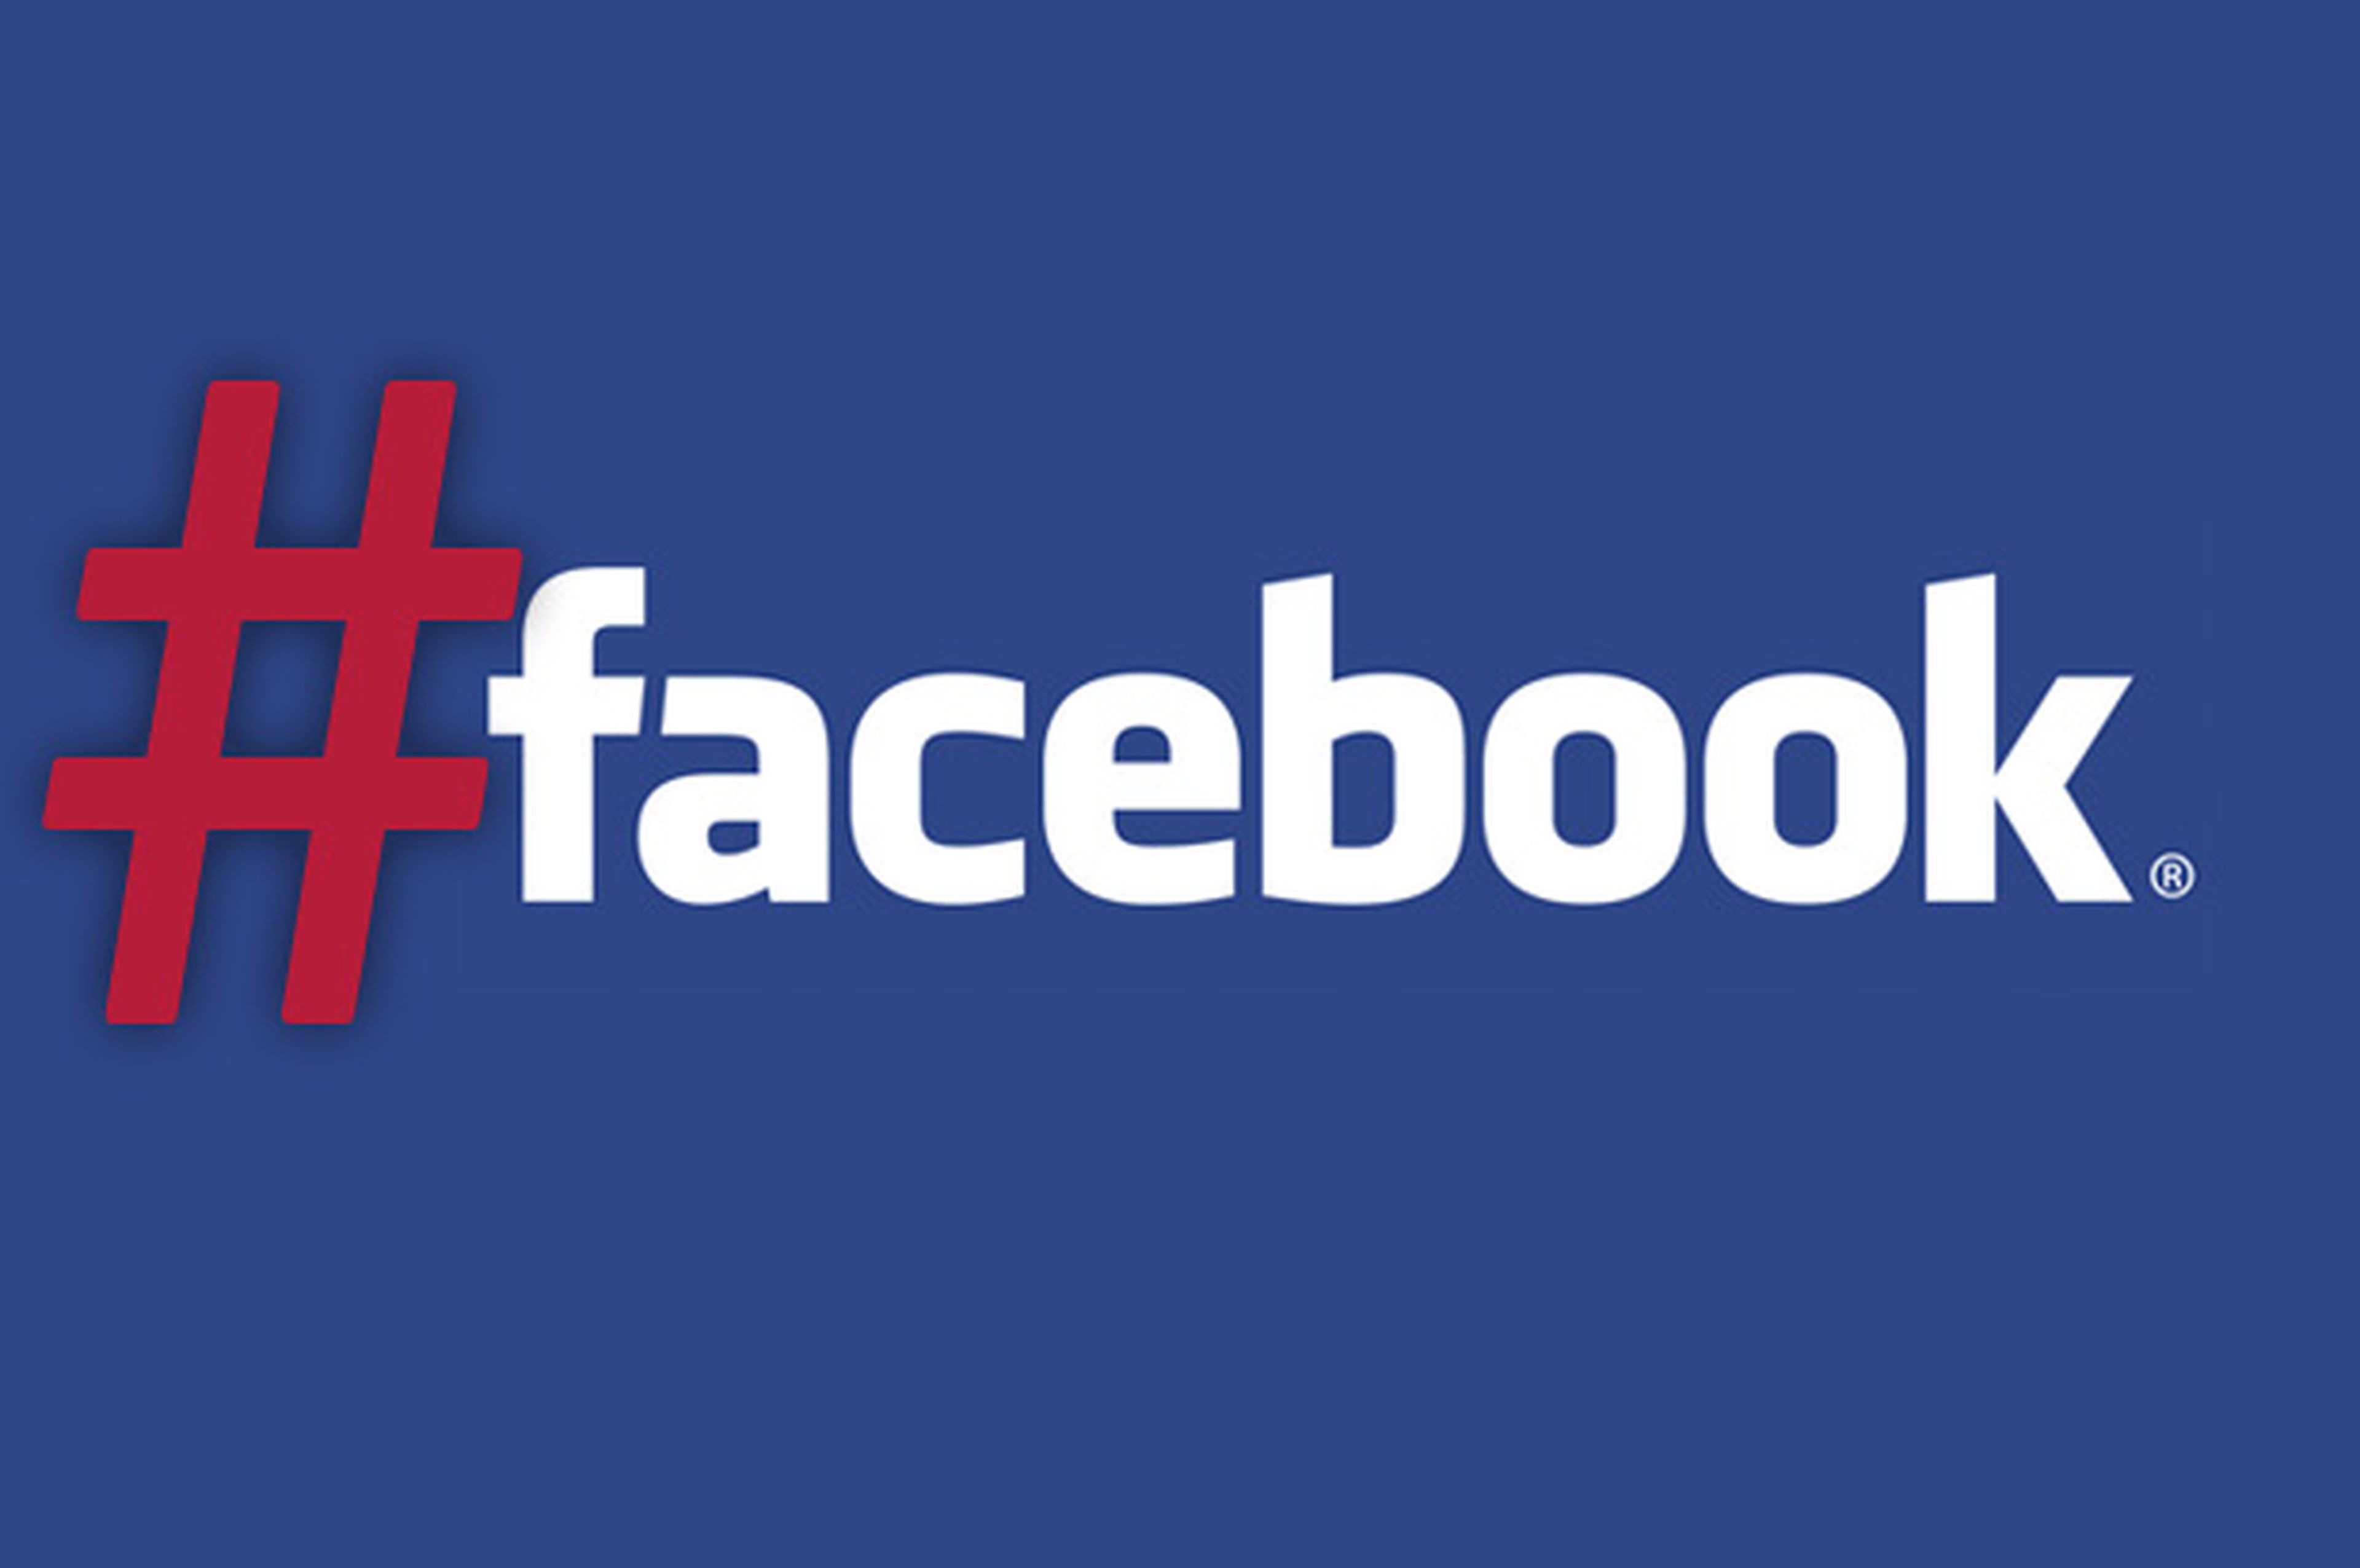 Facebook lanza "hashtags relacionados", nueva versión móvil